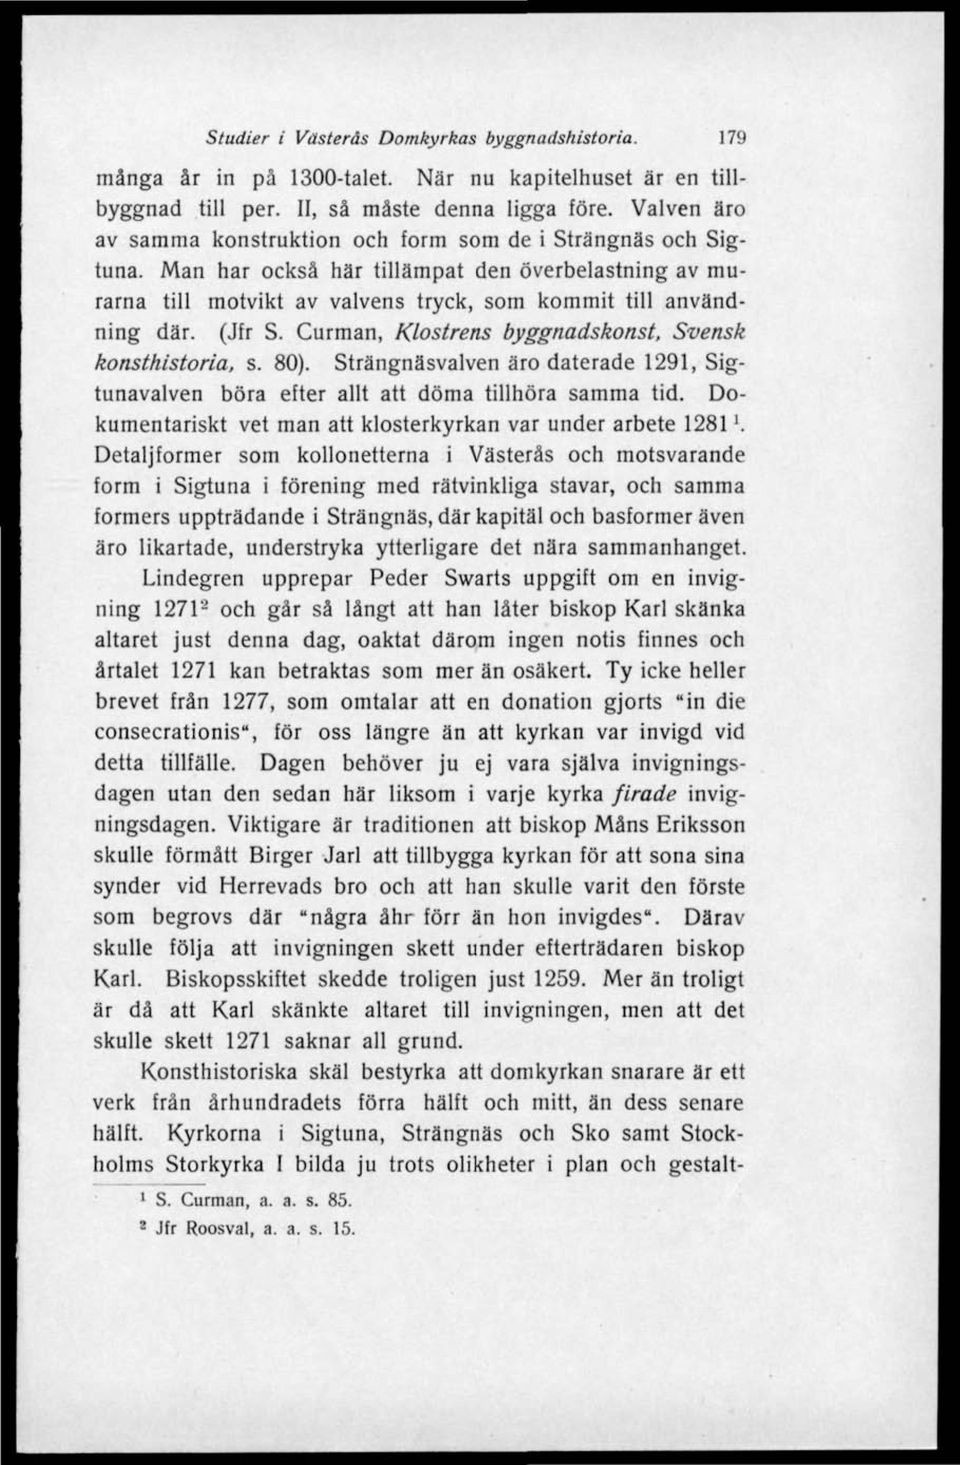 (Jfr S. Curman, Klostrens byggnadskonst. Svensk konsthistoria, s. 80). Strängnäsvalven äro daterade 1291, Sigtunavalven böra efter allt att döma tillhöra samma tid.